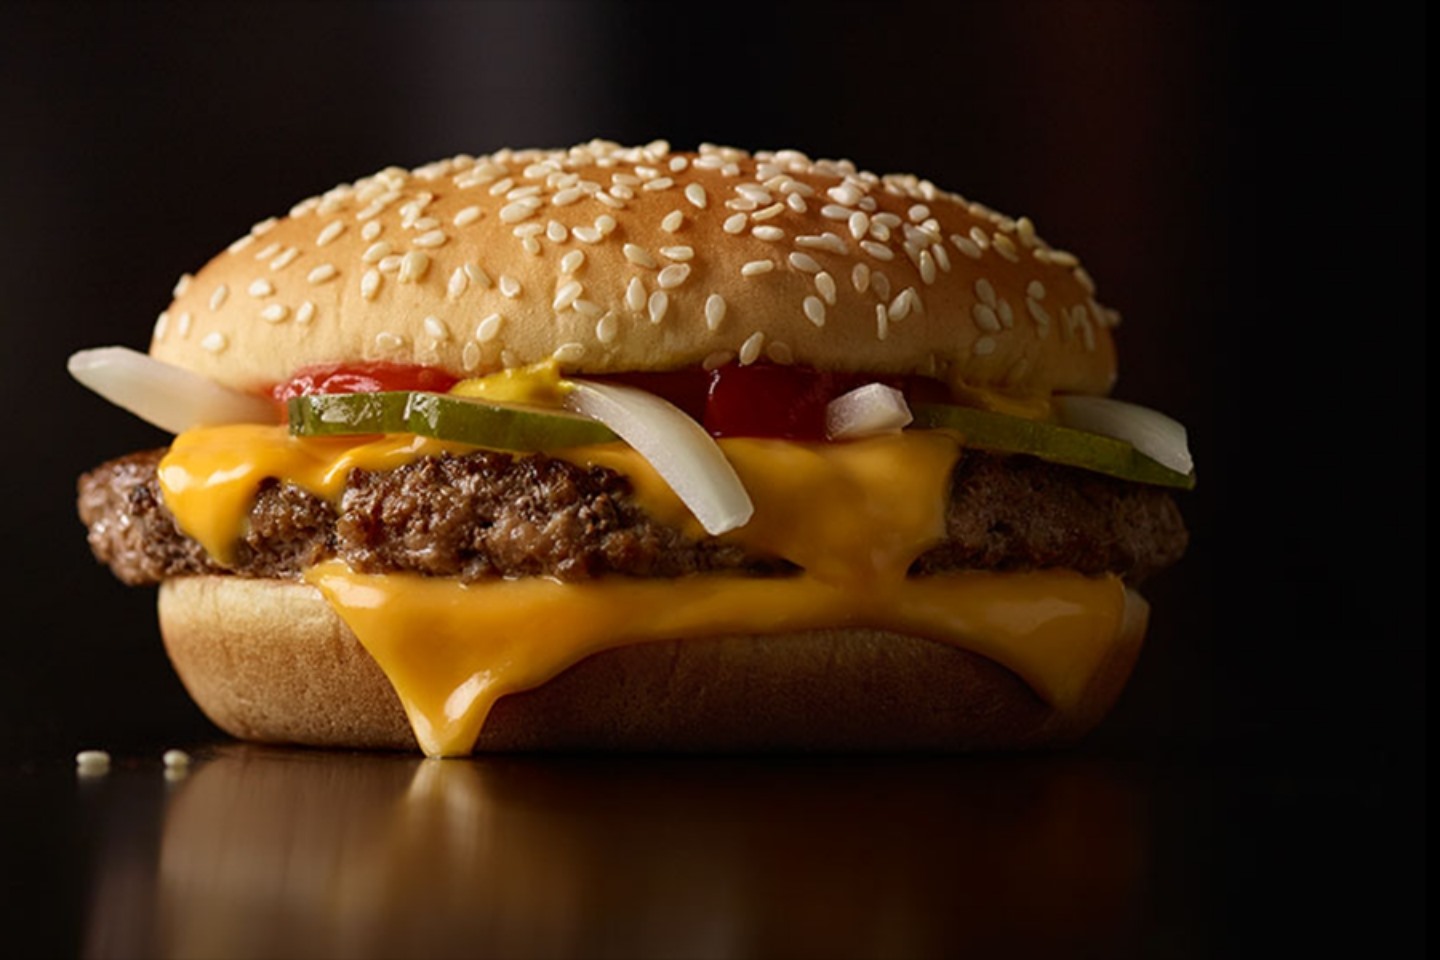 Khách hàng tại nhiều thị trường đang phản đối việc tăng giá của McDonald's (hình minh họa). Ảnh: McDonald's